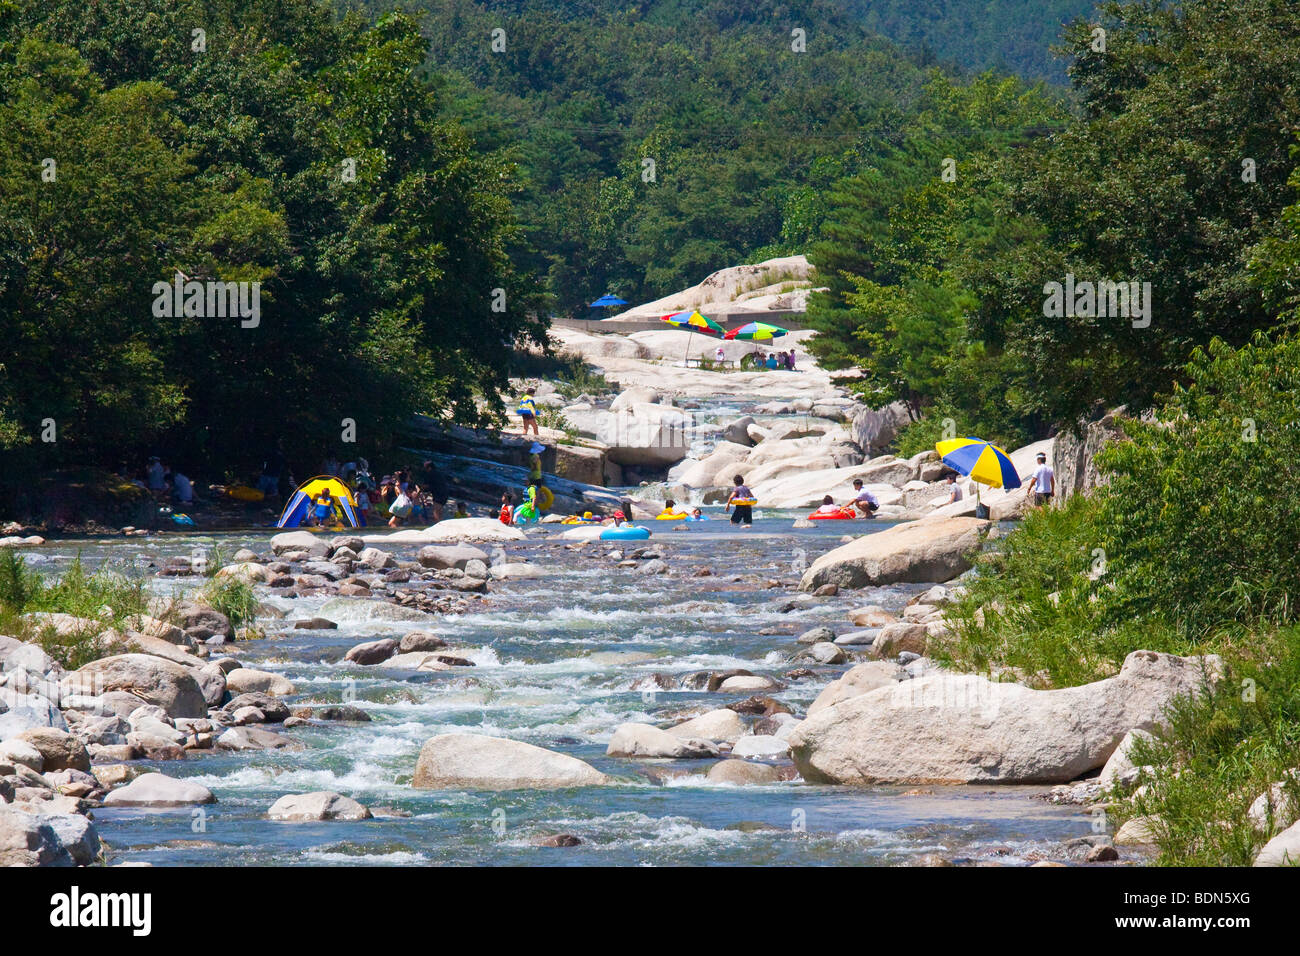 River in Soraksan National Park in South Korea Stock Photo